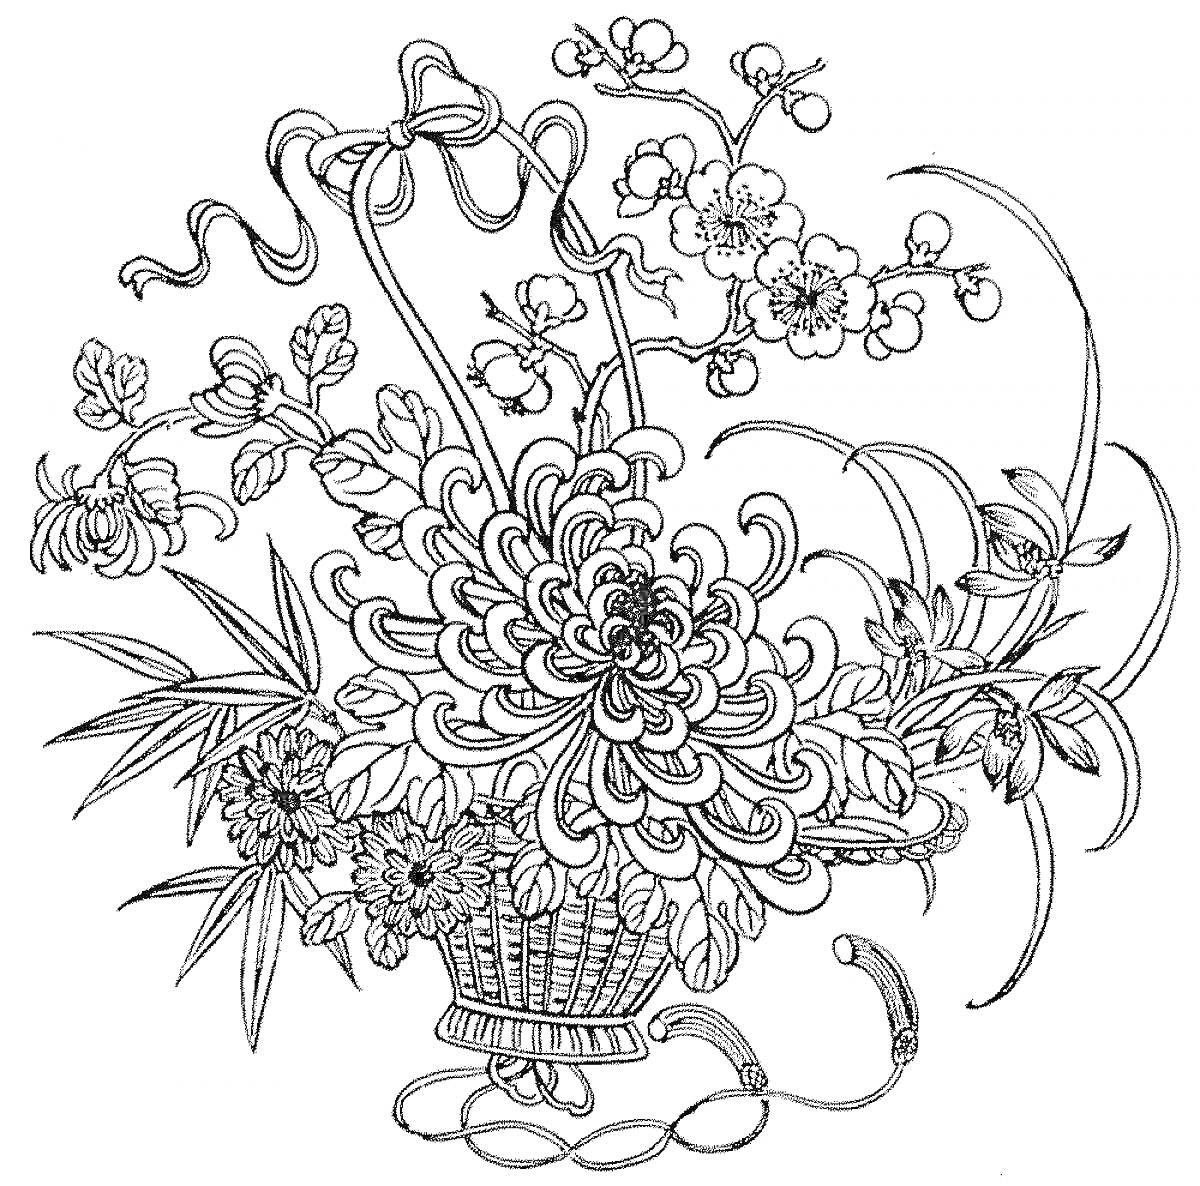 Раскраска Букет с хризантемами, орхидеями, лентами и листьями в плетеной корзине